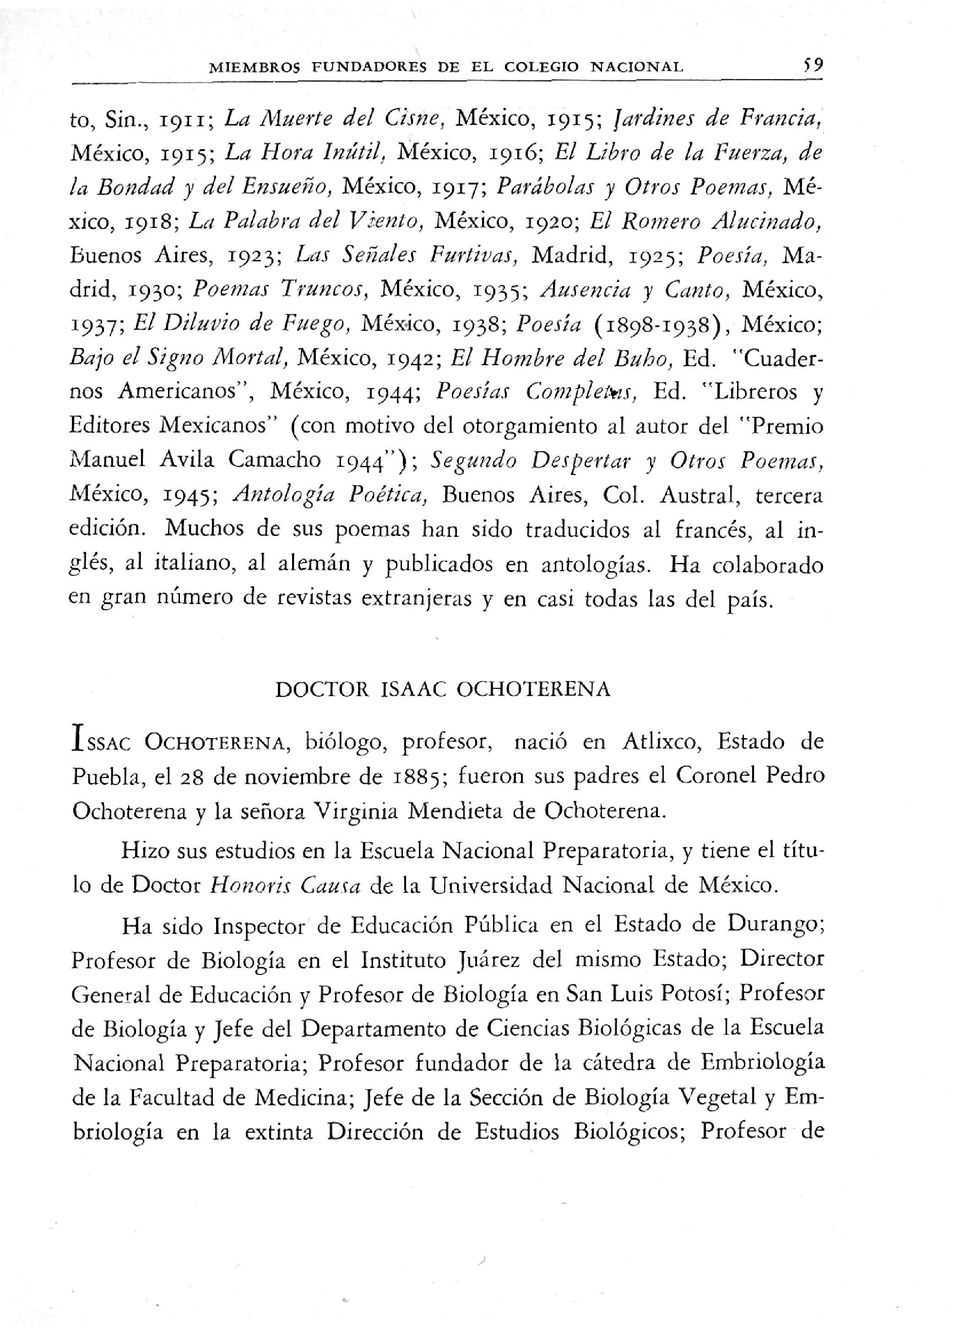 México, 1918; La Palabra del Viento, México, 1920; El Ro?